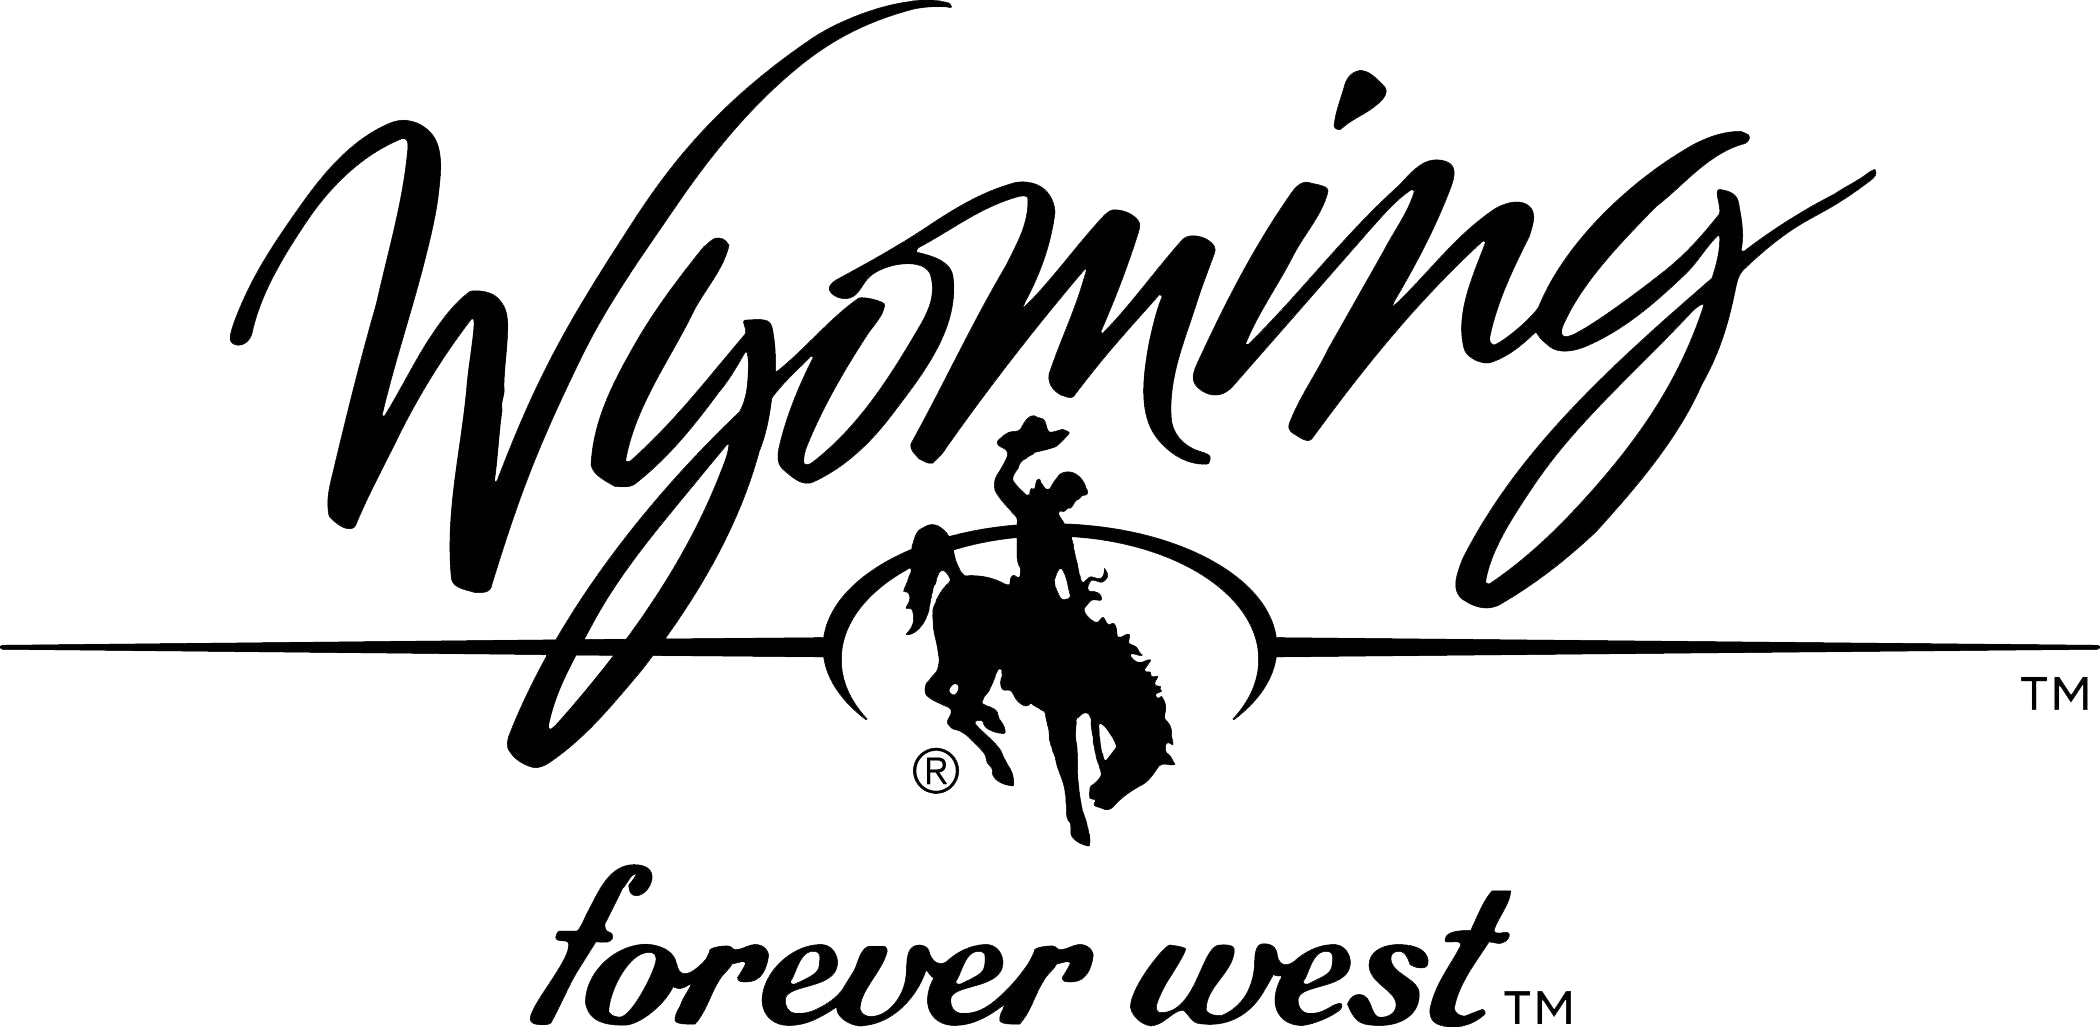 Travel Wyoming logo